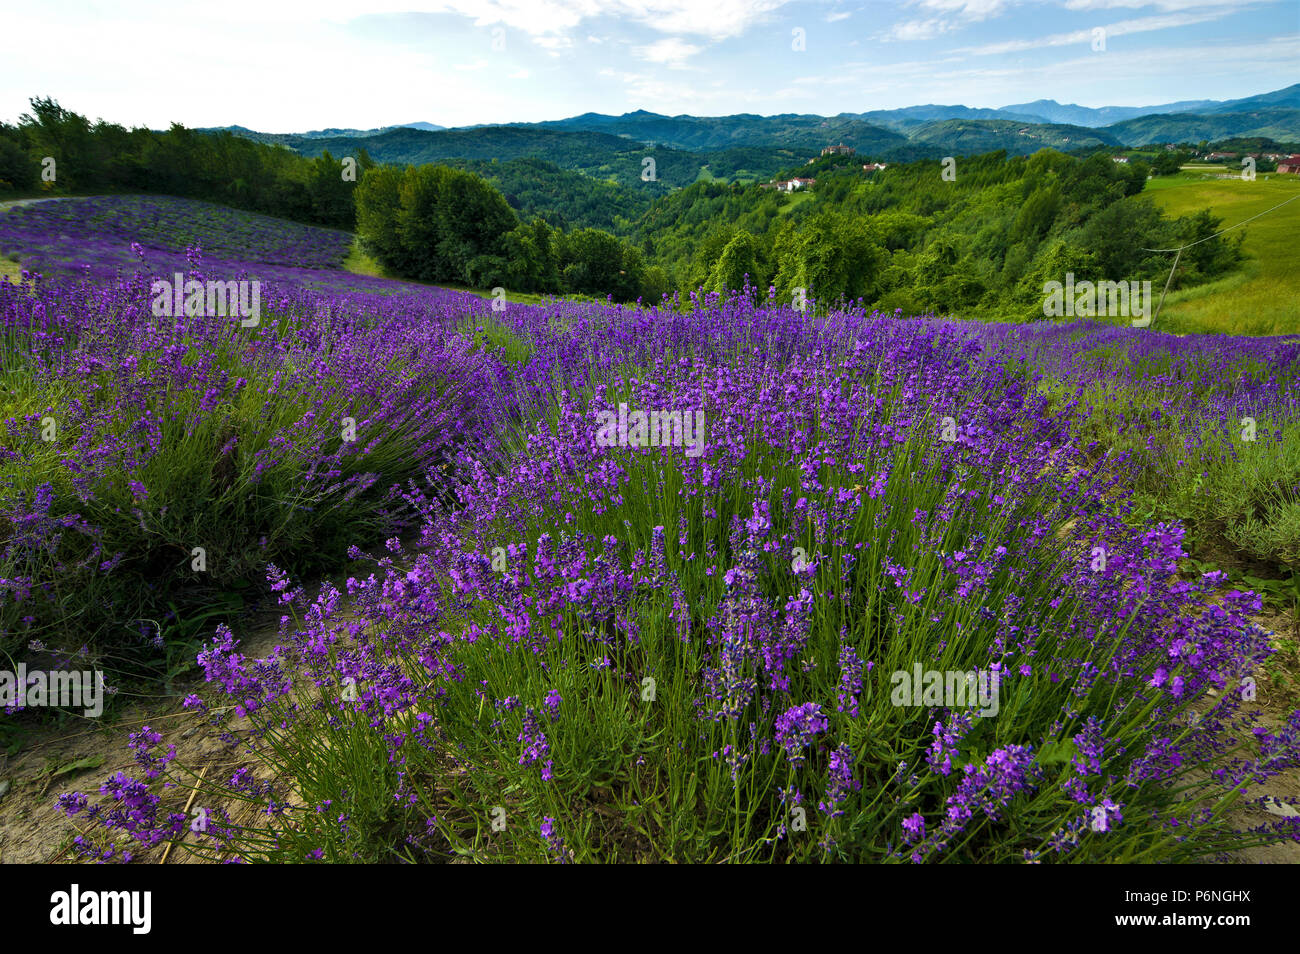 Campo di lavanda in fiore nei pressi del villaggio di Sale San Giovanni, nelle Langhe, in provincia di Cuneo, Piemonte, a nord-ovest dell'Italia, dell'Europa. Foto Stock